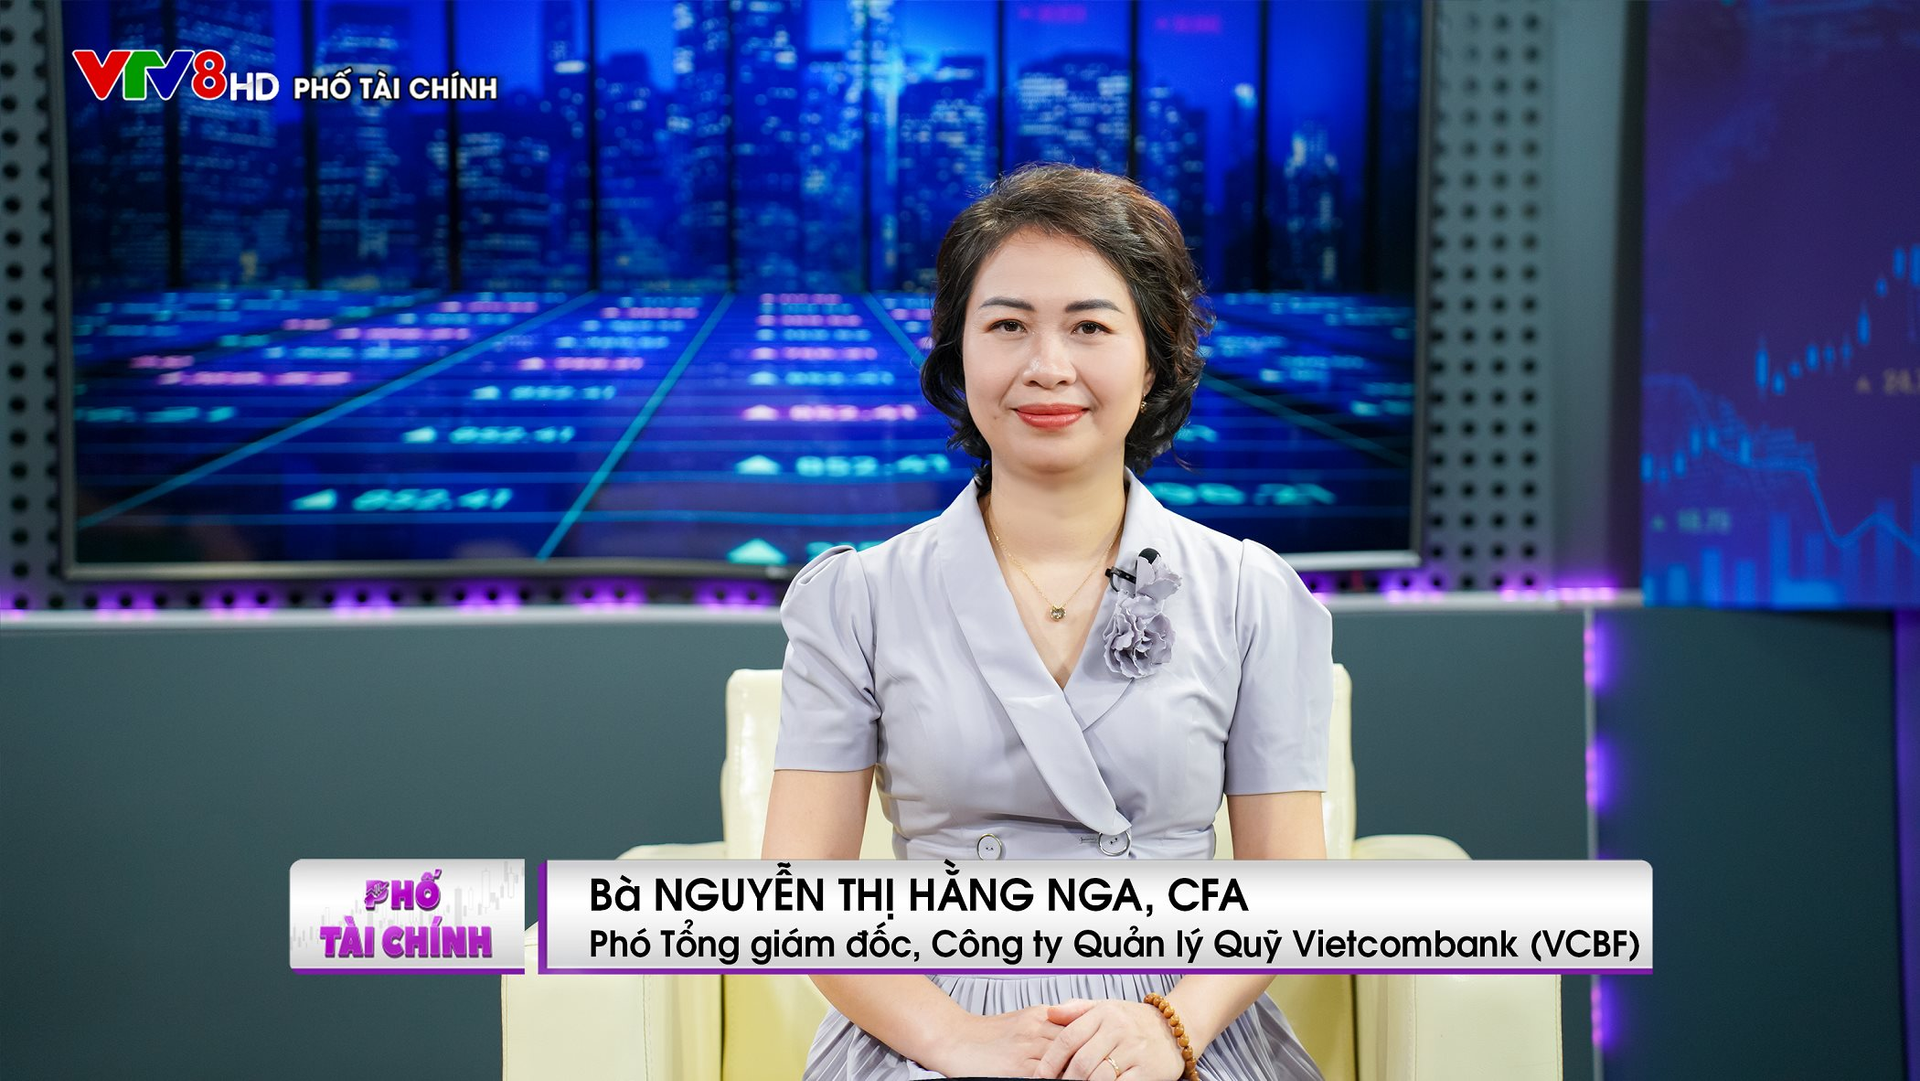 Phó Tổng giám đốc VCBF: Tiềm năng ngành quản lý quỹ ở Việt Nam còn rất lớn.